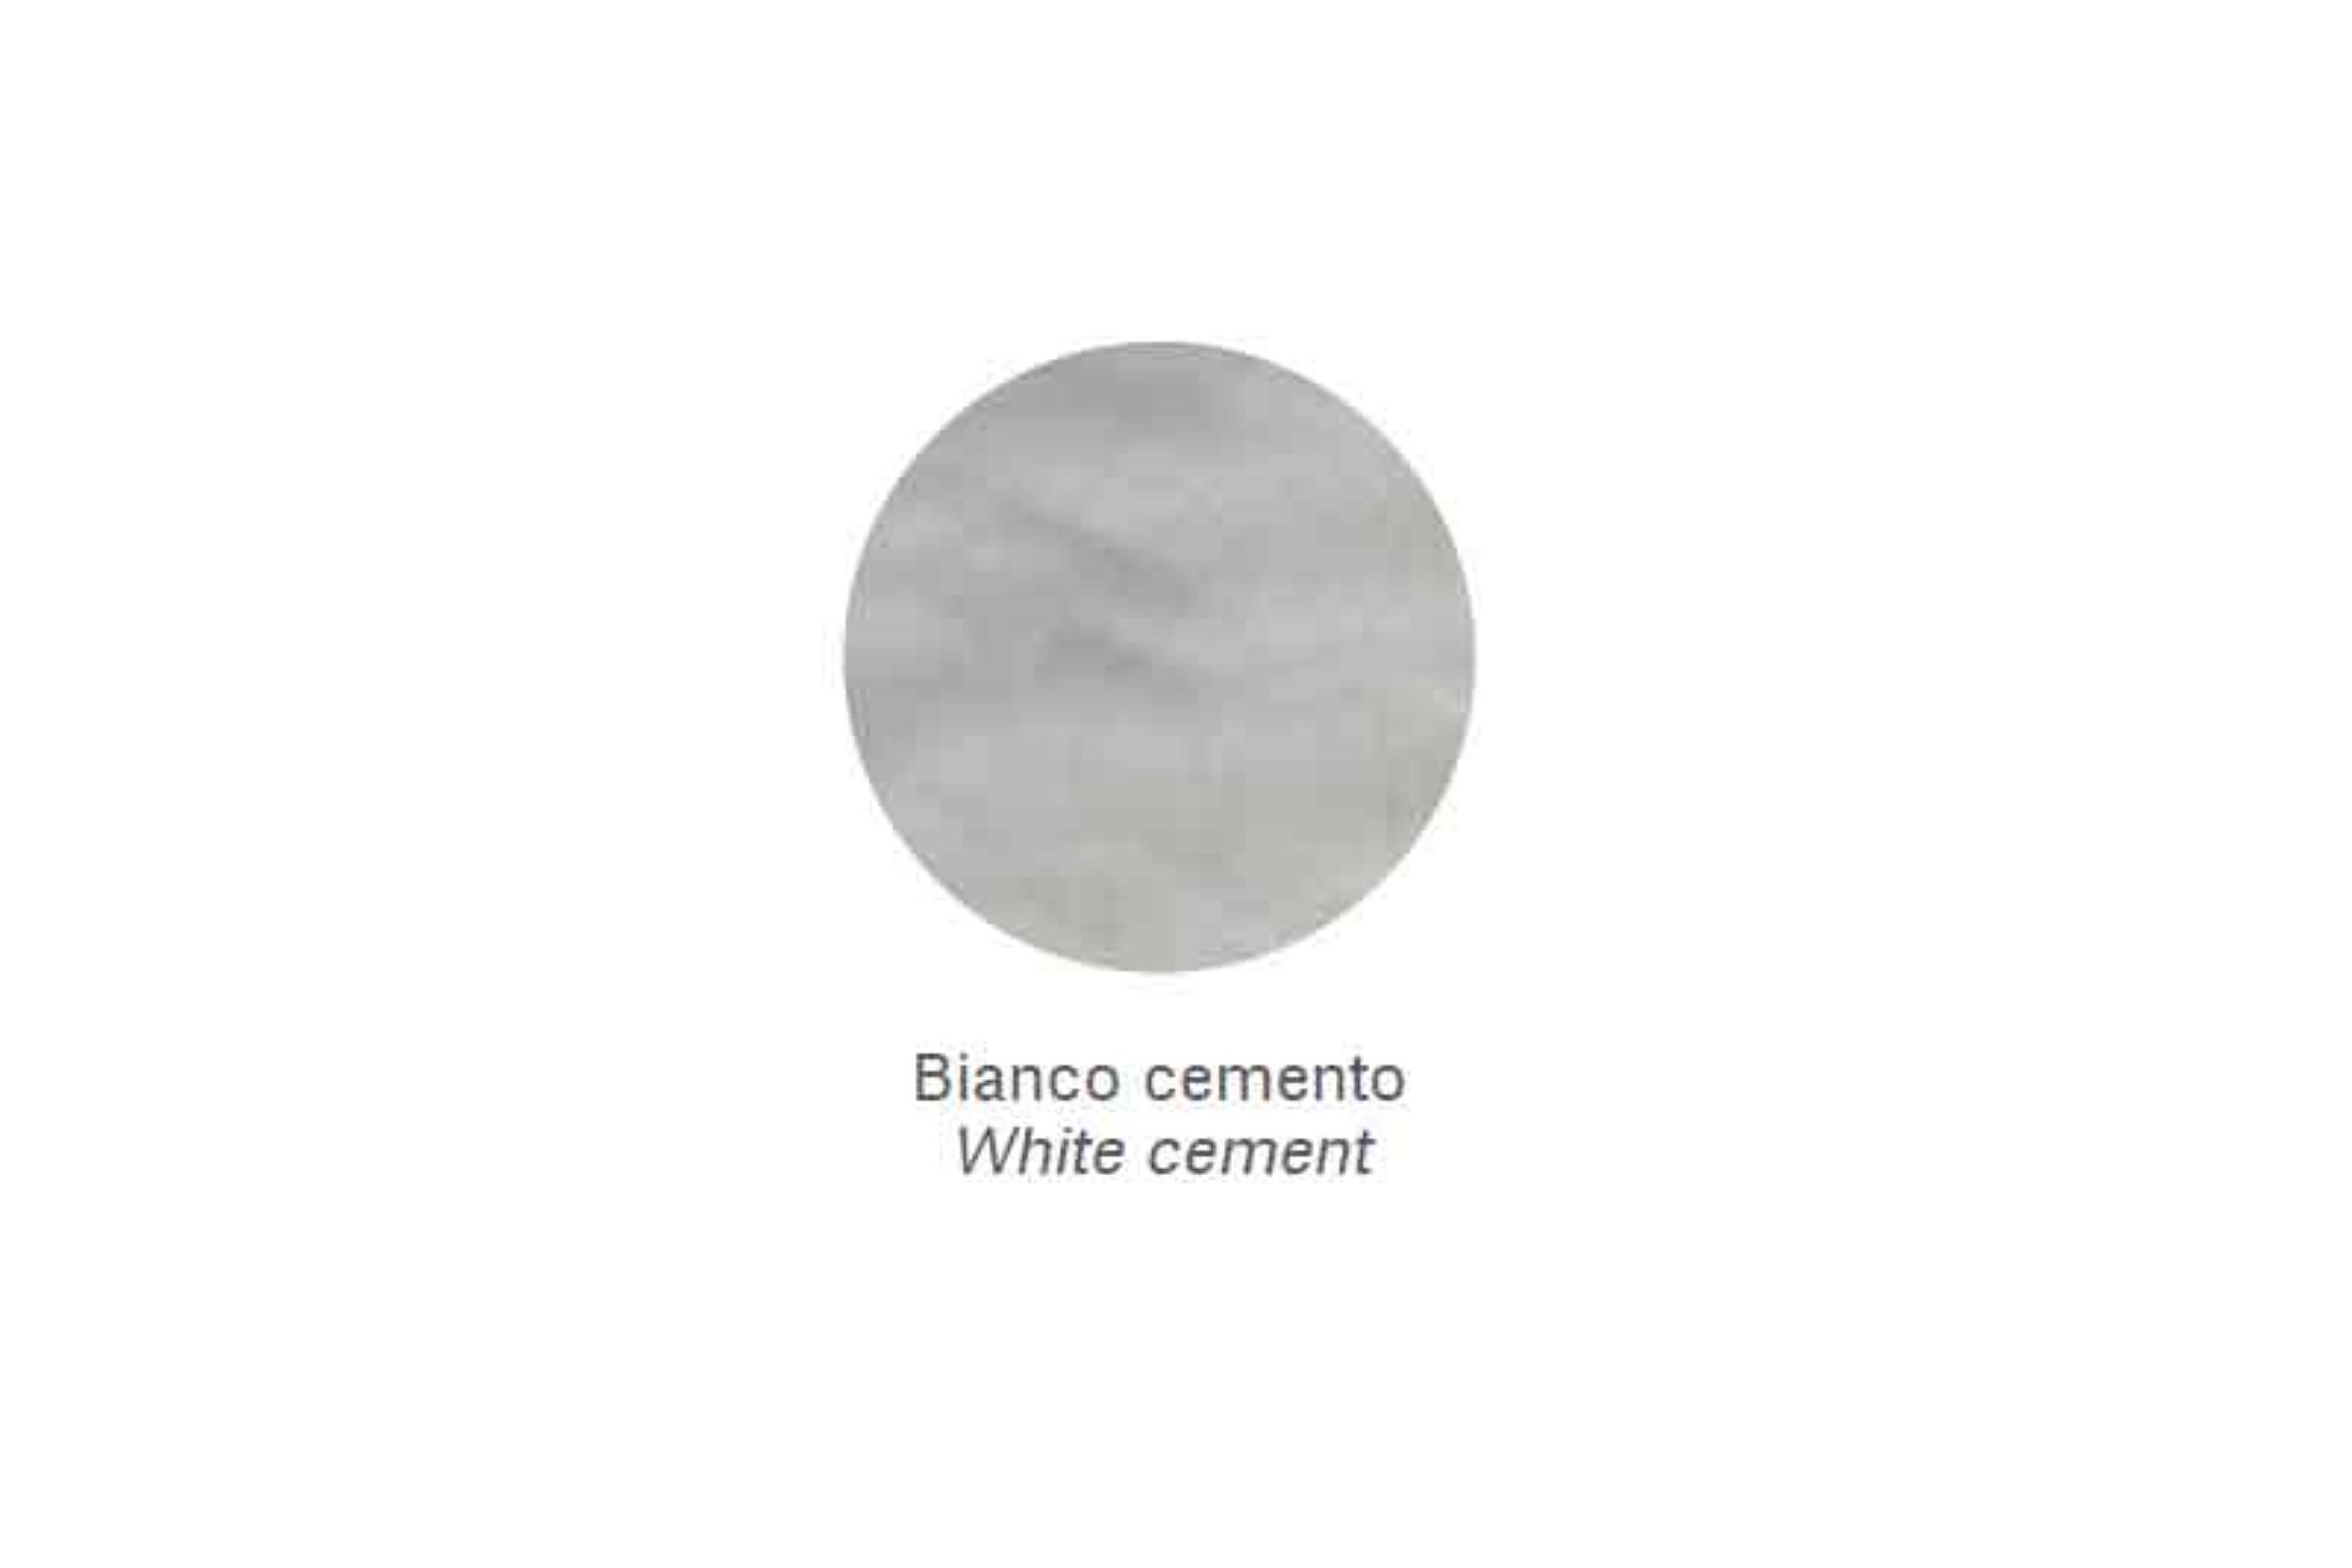 Mensola Zen /30 - Mensola Zen  Bianco cemento /30